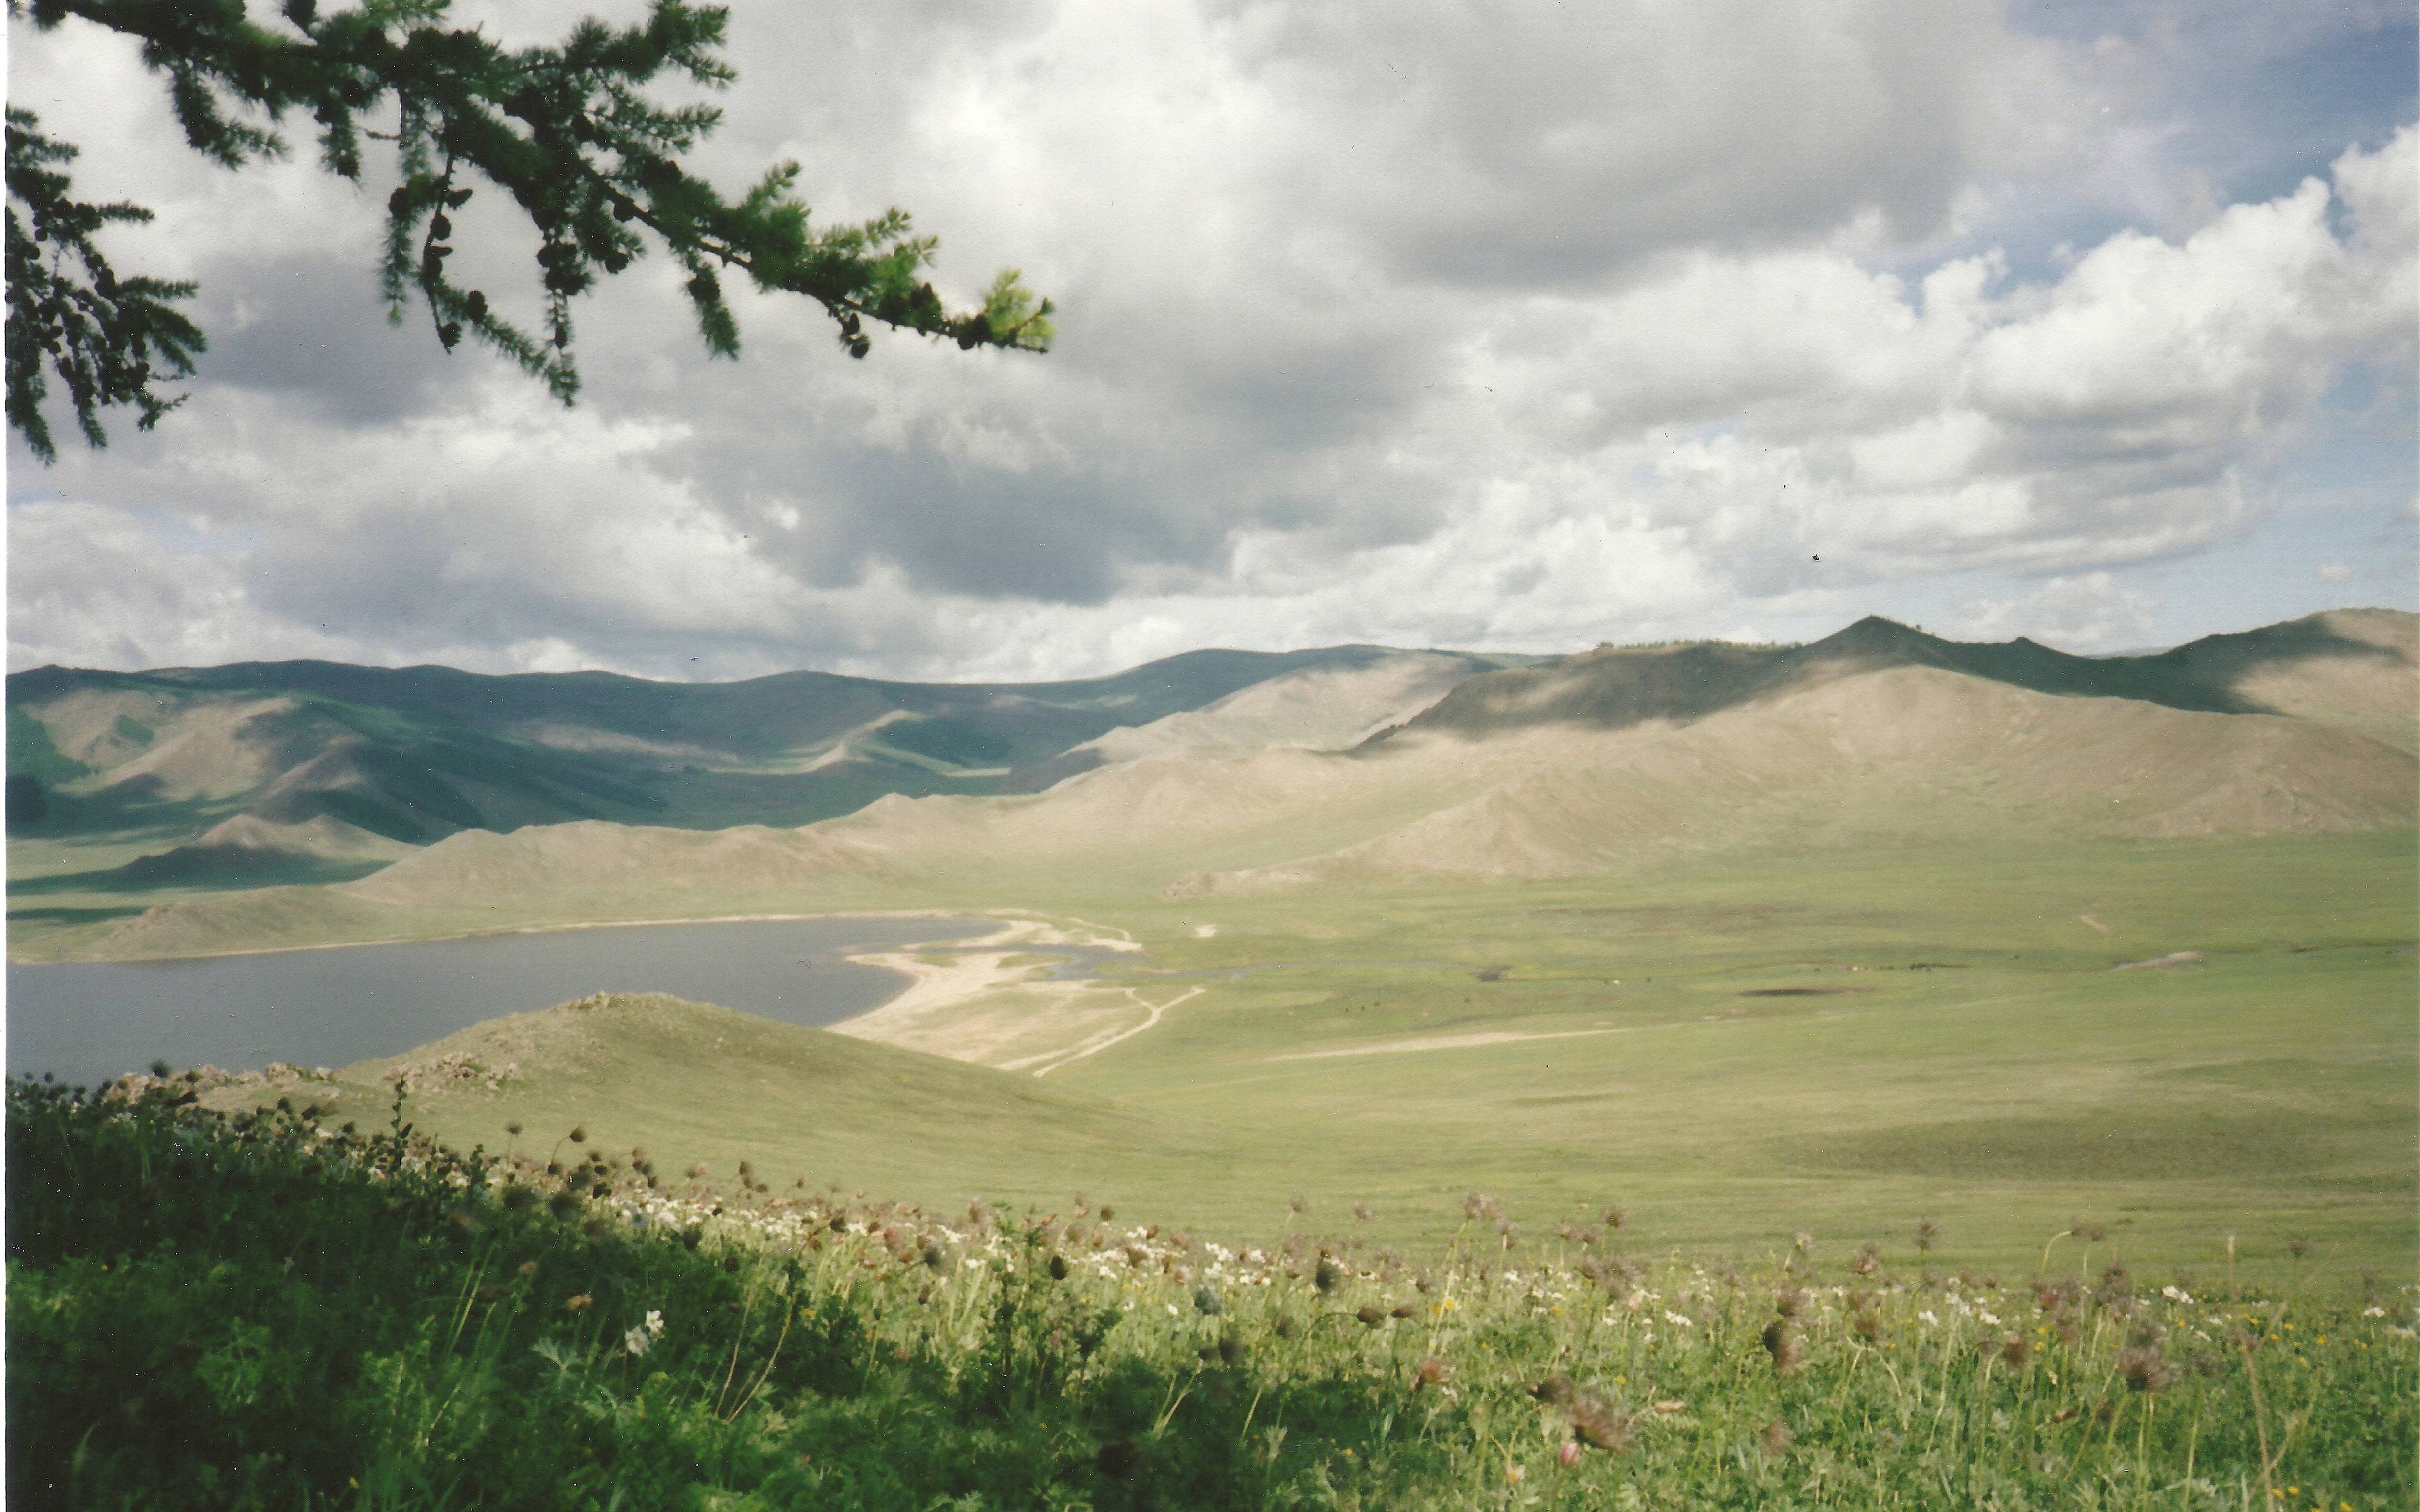 Terkhiin Tsagaan Lake